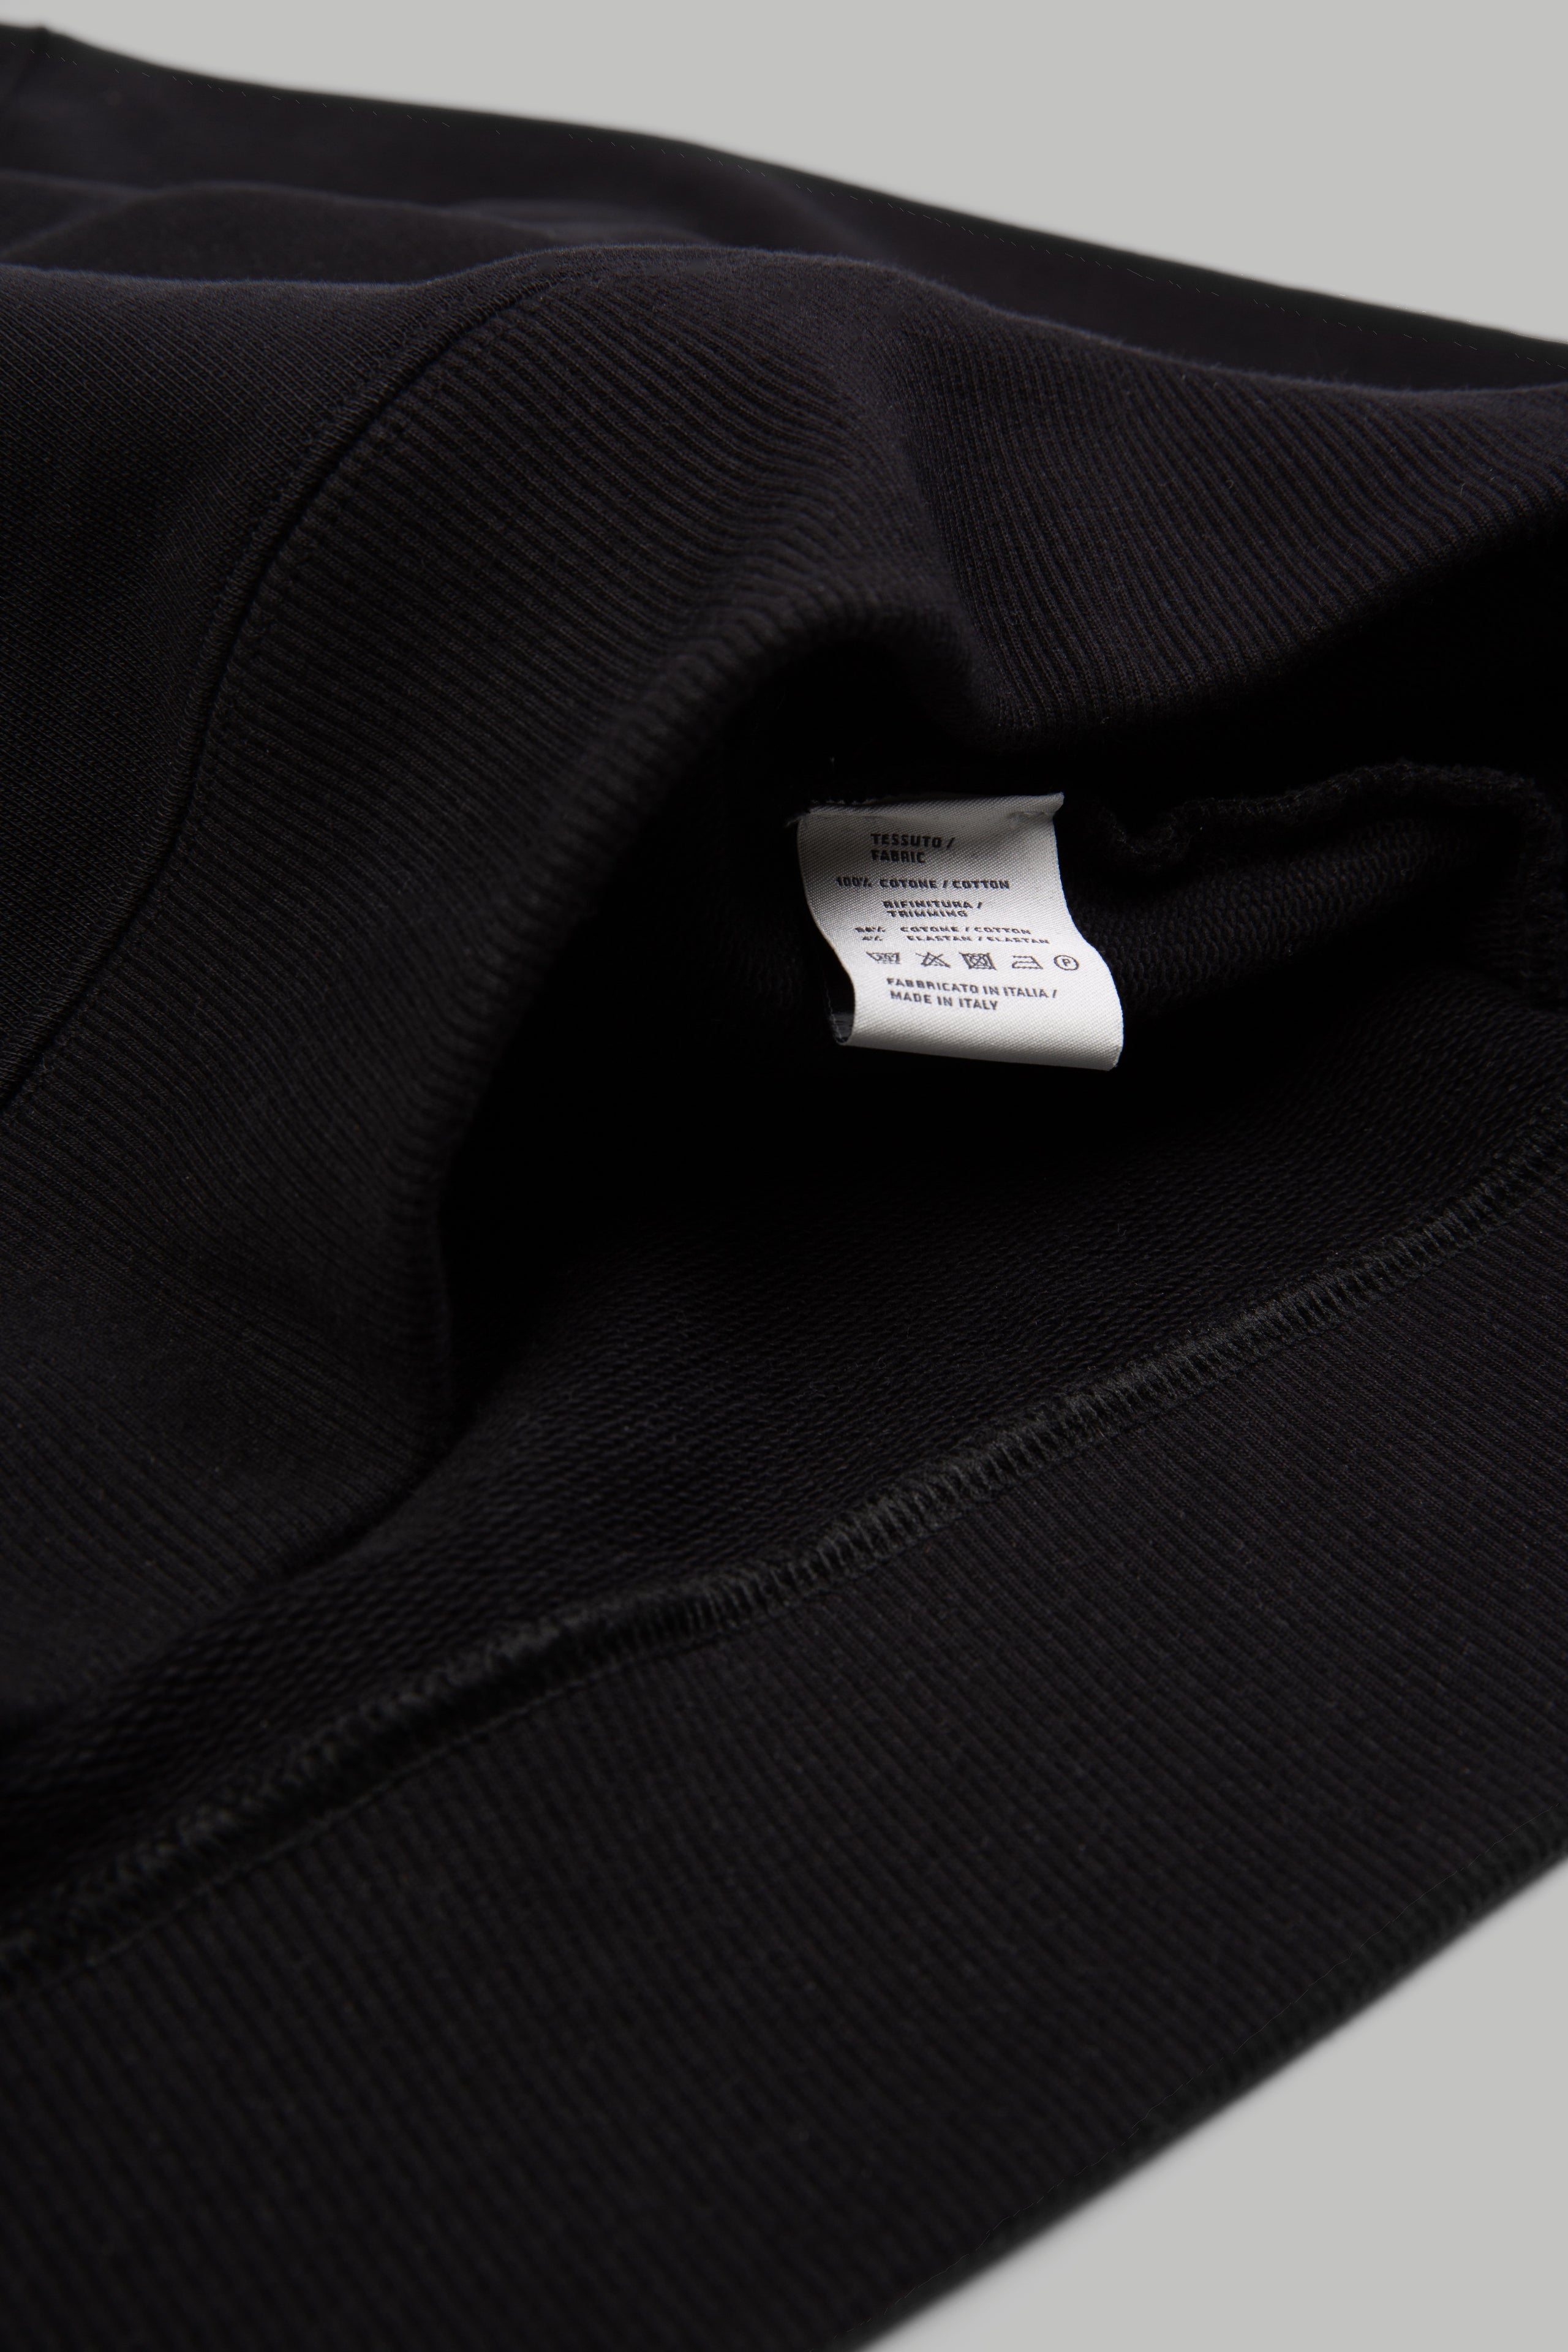 Black - Greggio Blanks Hoodie H01 Single - Black - Luxury Made in Italy Wholesale Streetwear